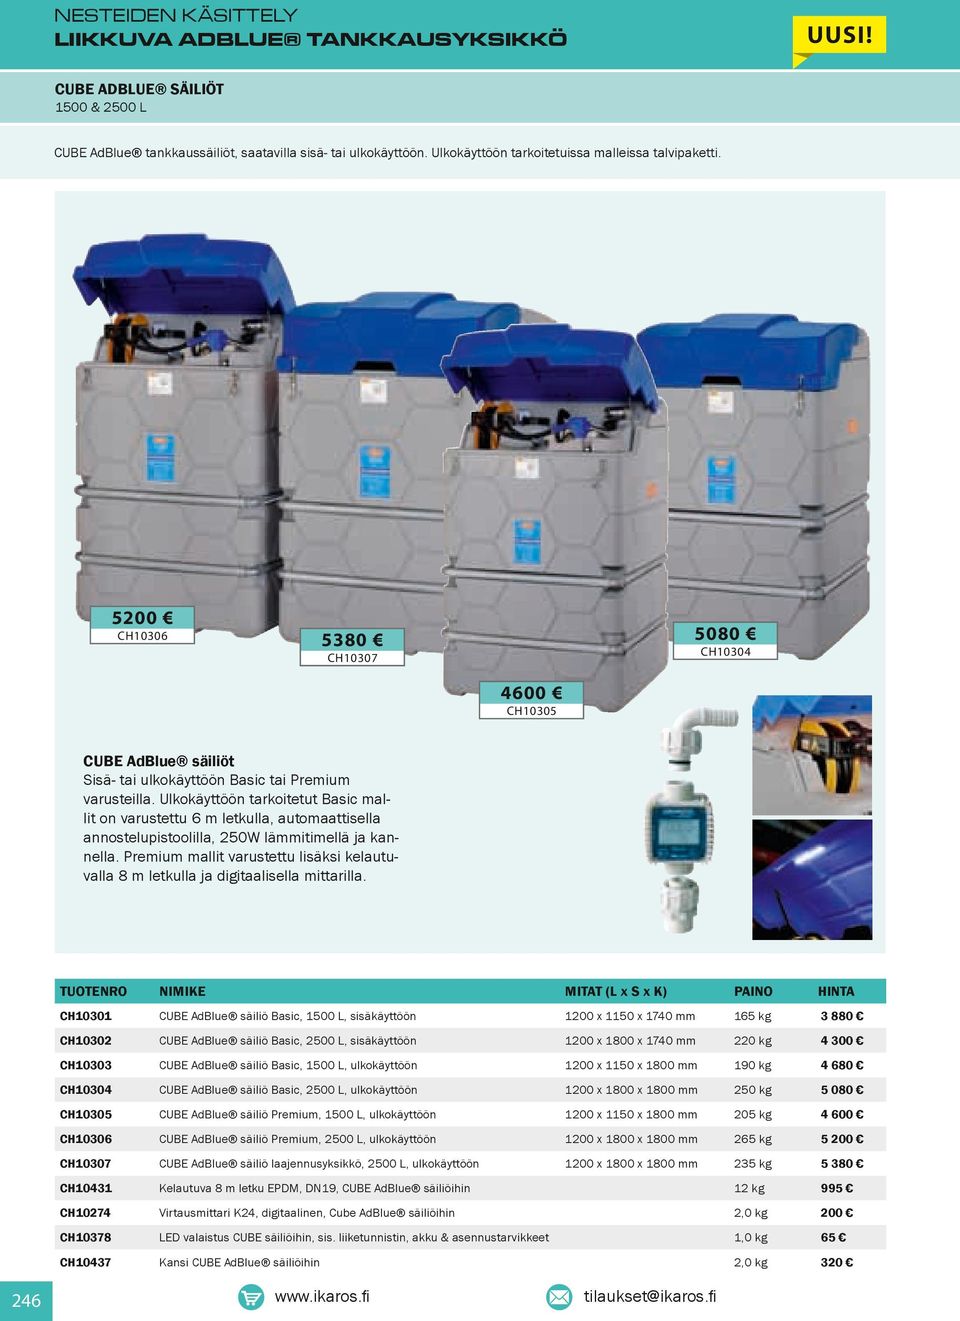 Ulkokäyttöön tarkoitetut Basic mallit on varustettu 6 m letkulla, automaattisella annostelupistoolilla, 250W lämmitimellä ja kannella.